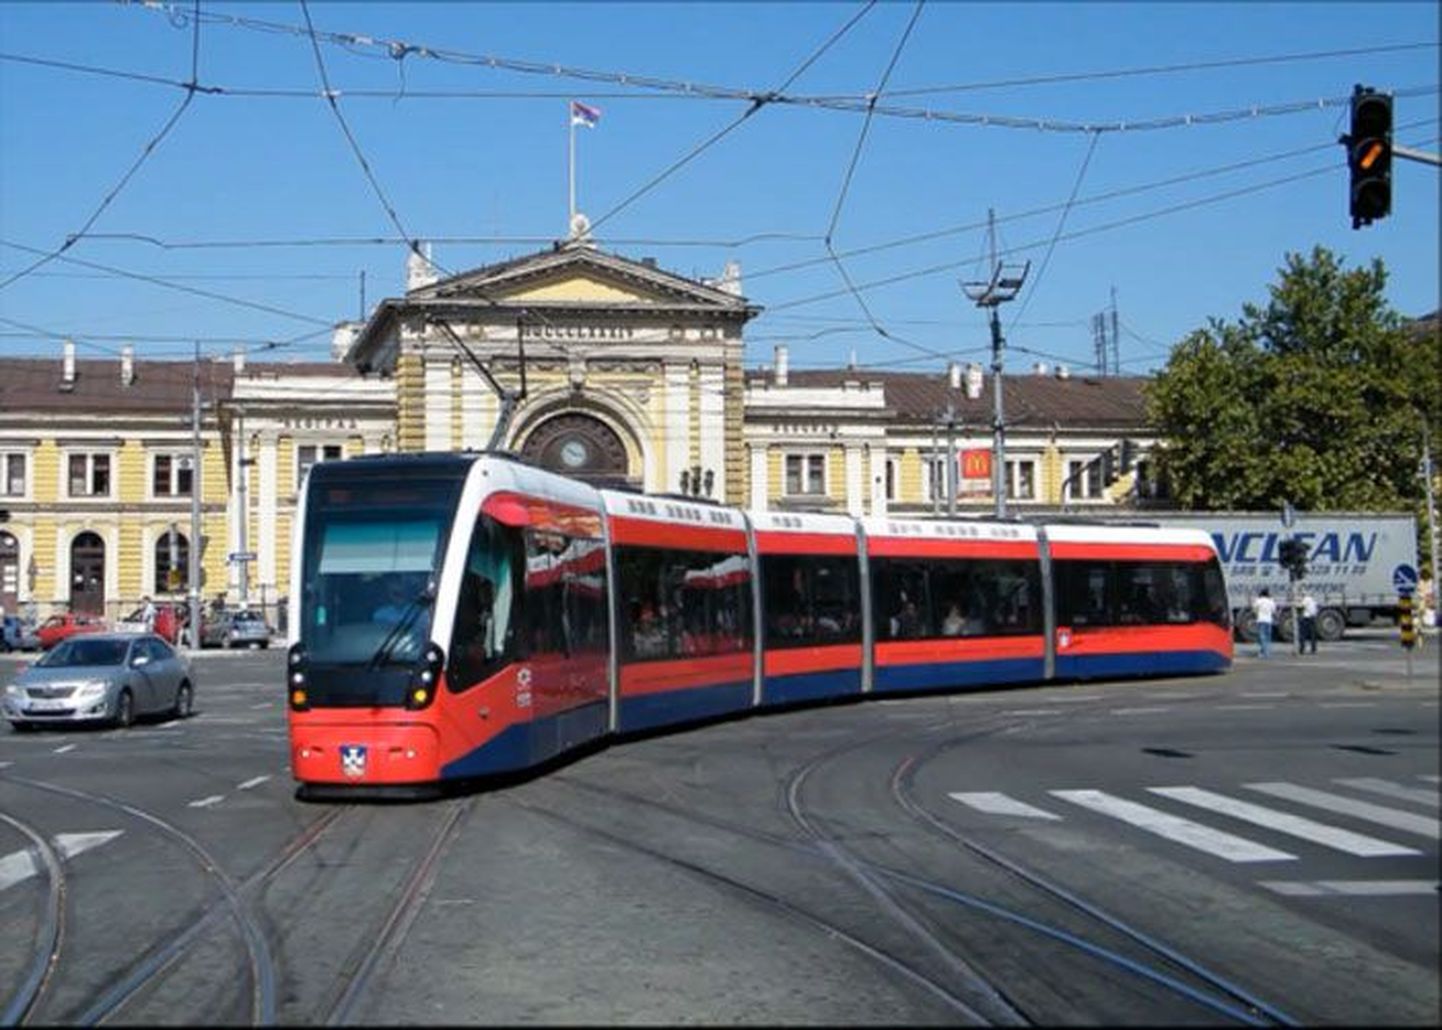 Belgradis sõitev CAFi tramm on tõenäoliselt ligilähedane neile trammidele, mis hakkavad liikuma Tallinnas.